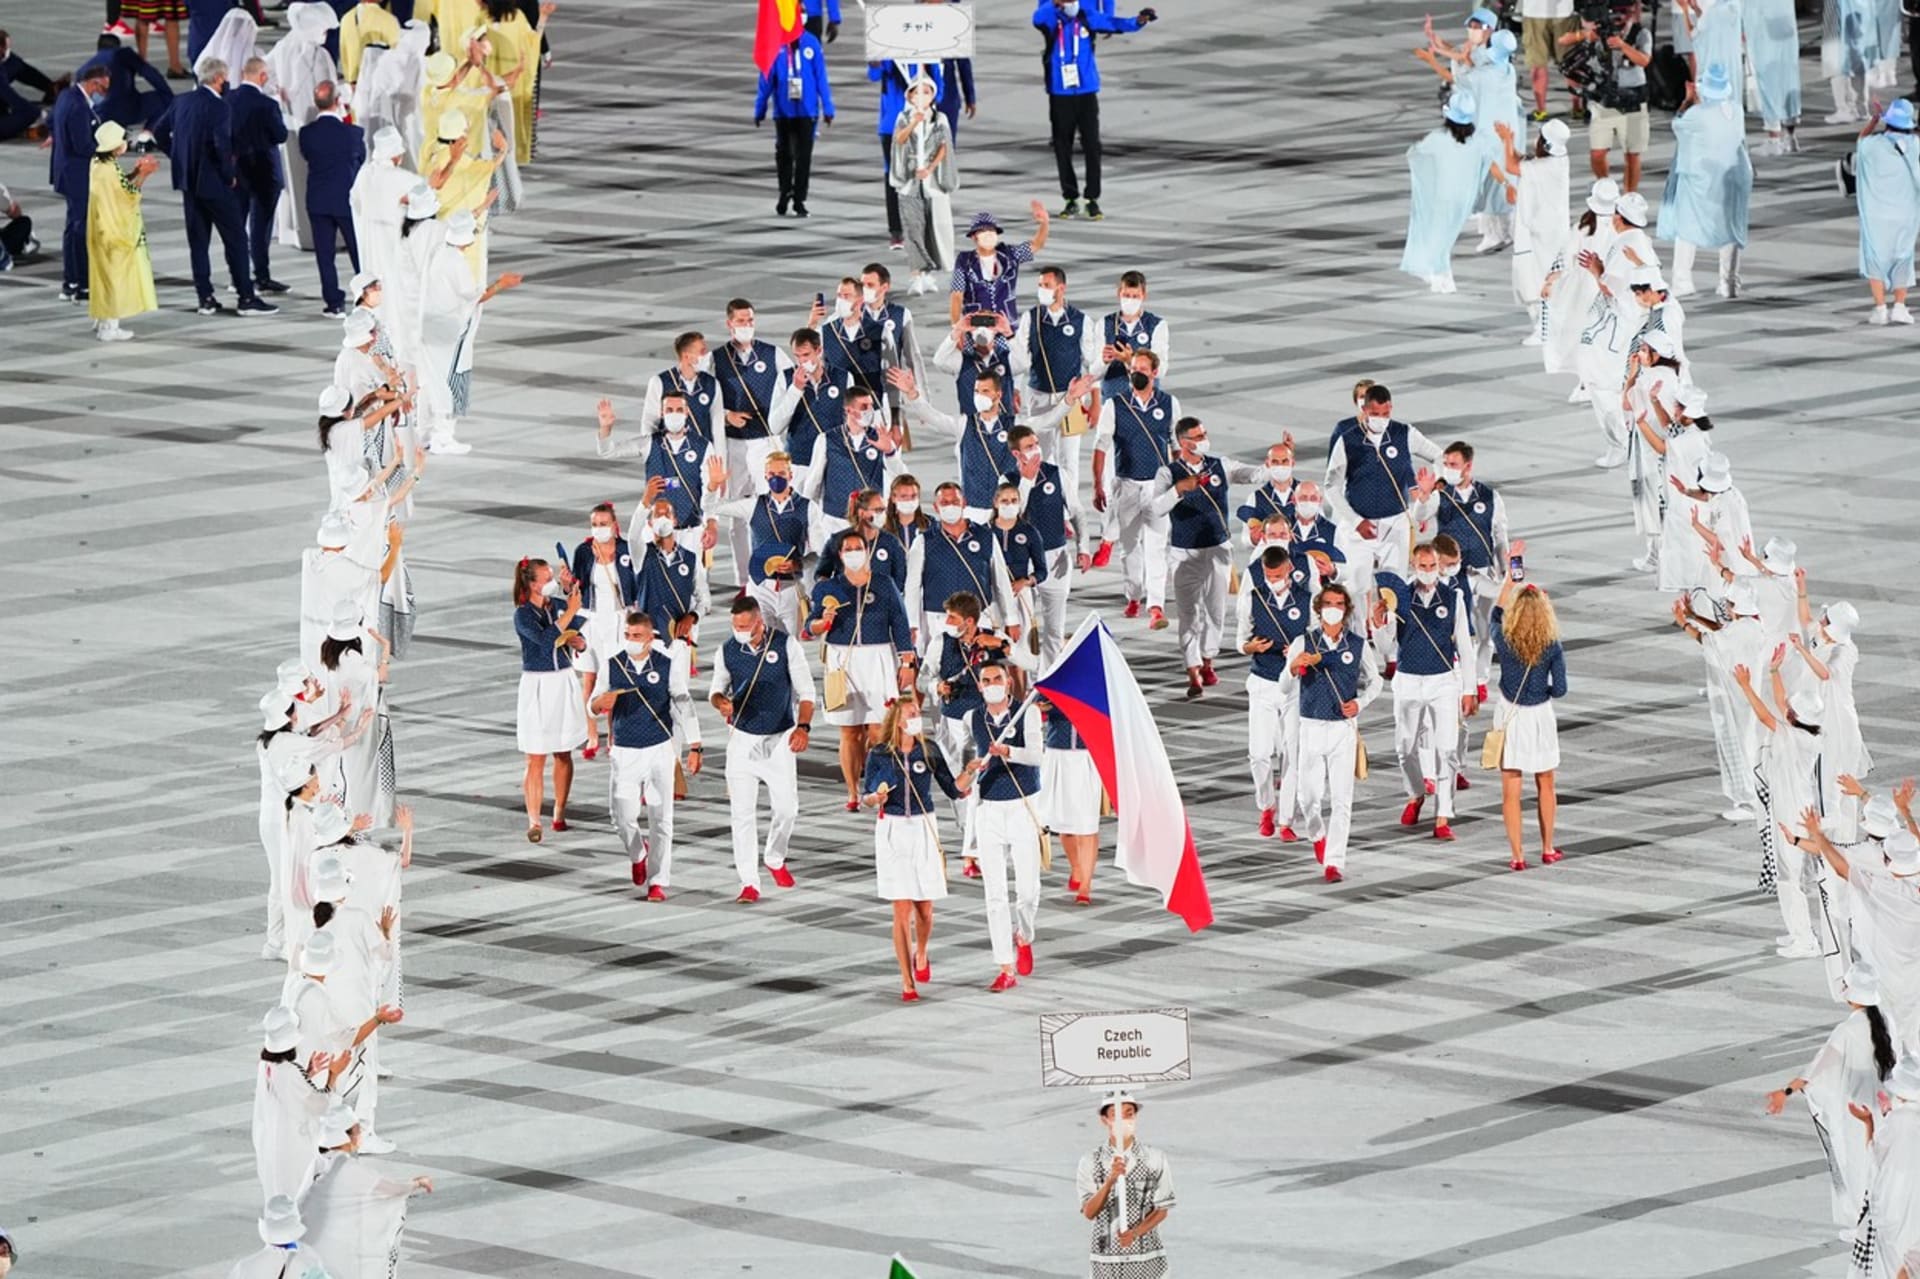 Čeští olympionici nastupují na slavnostní ceremoniál při zahájení her v Tokiu. Vlajkonoši jsou tenistka Petra Kvitová s basketbalistou Tomášem Satoranským.